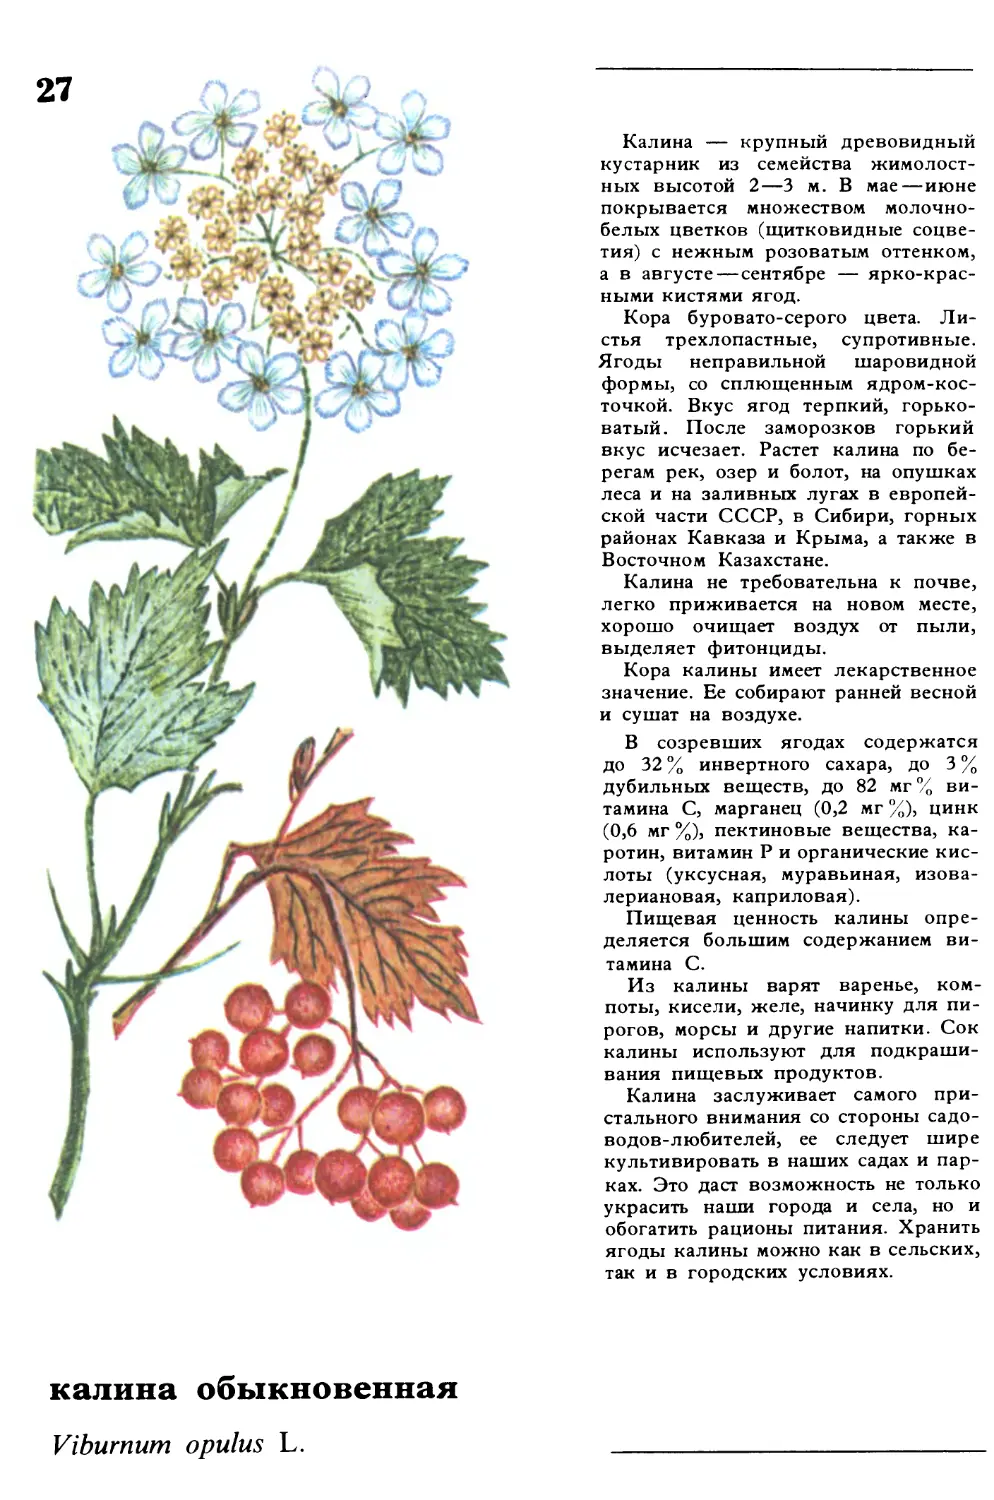 Дикорастущие съедобные растения Татарии